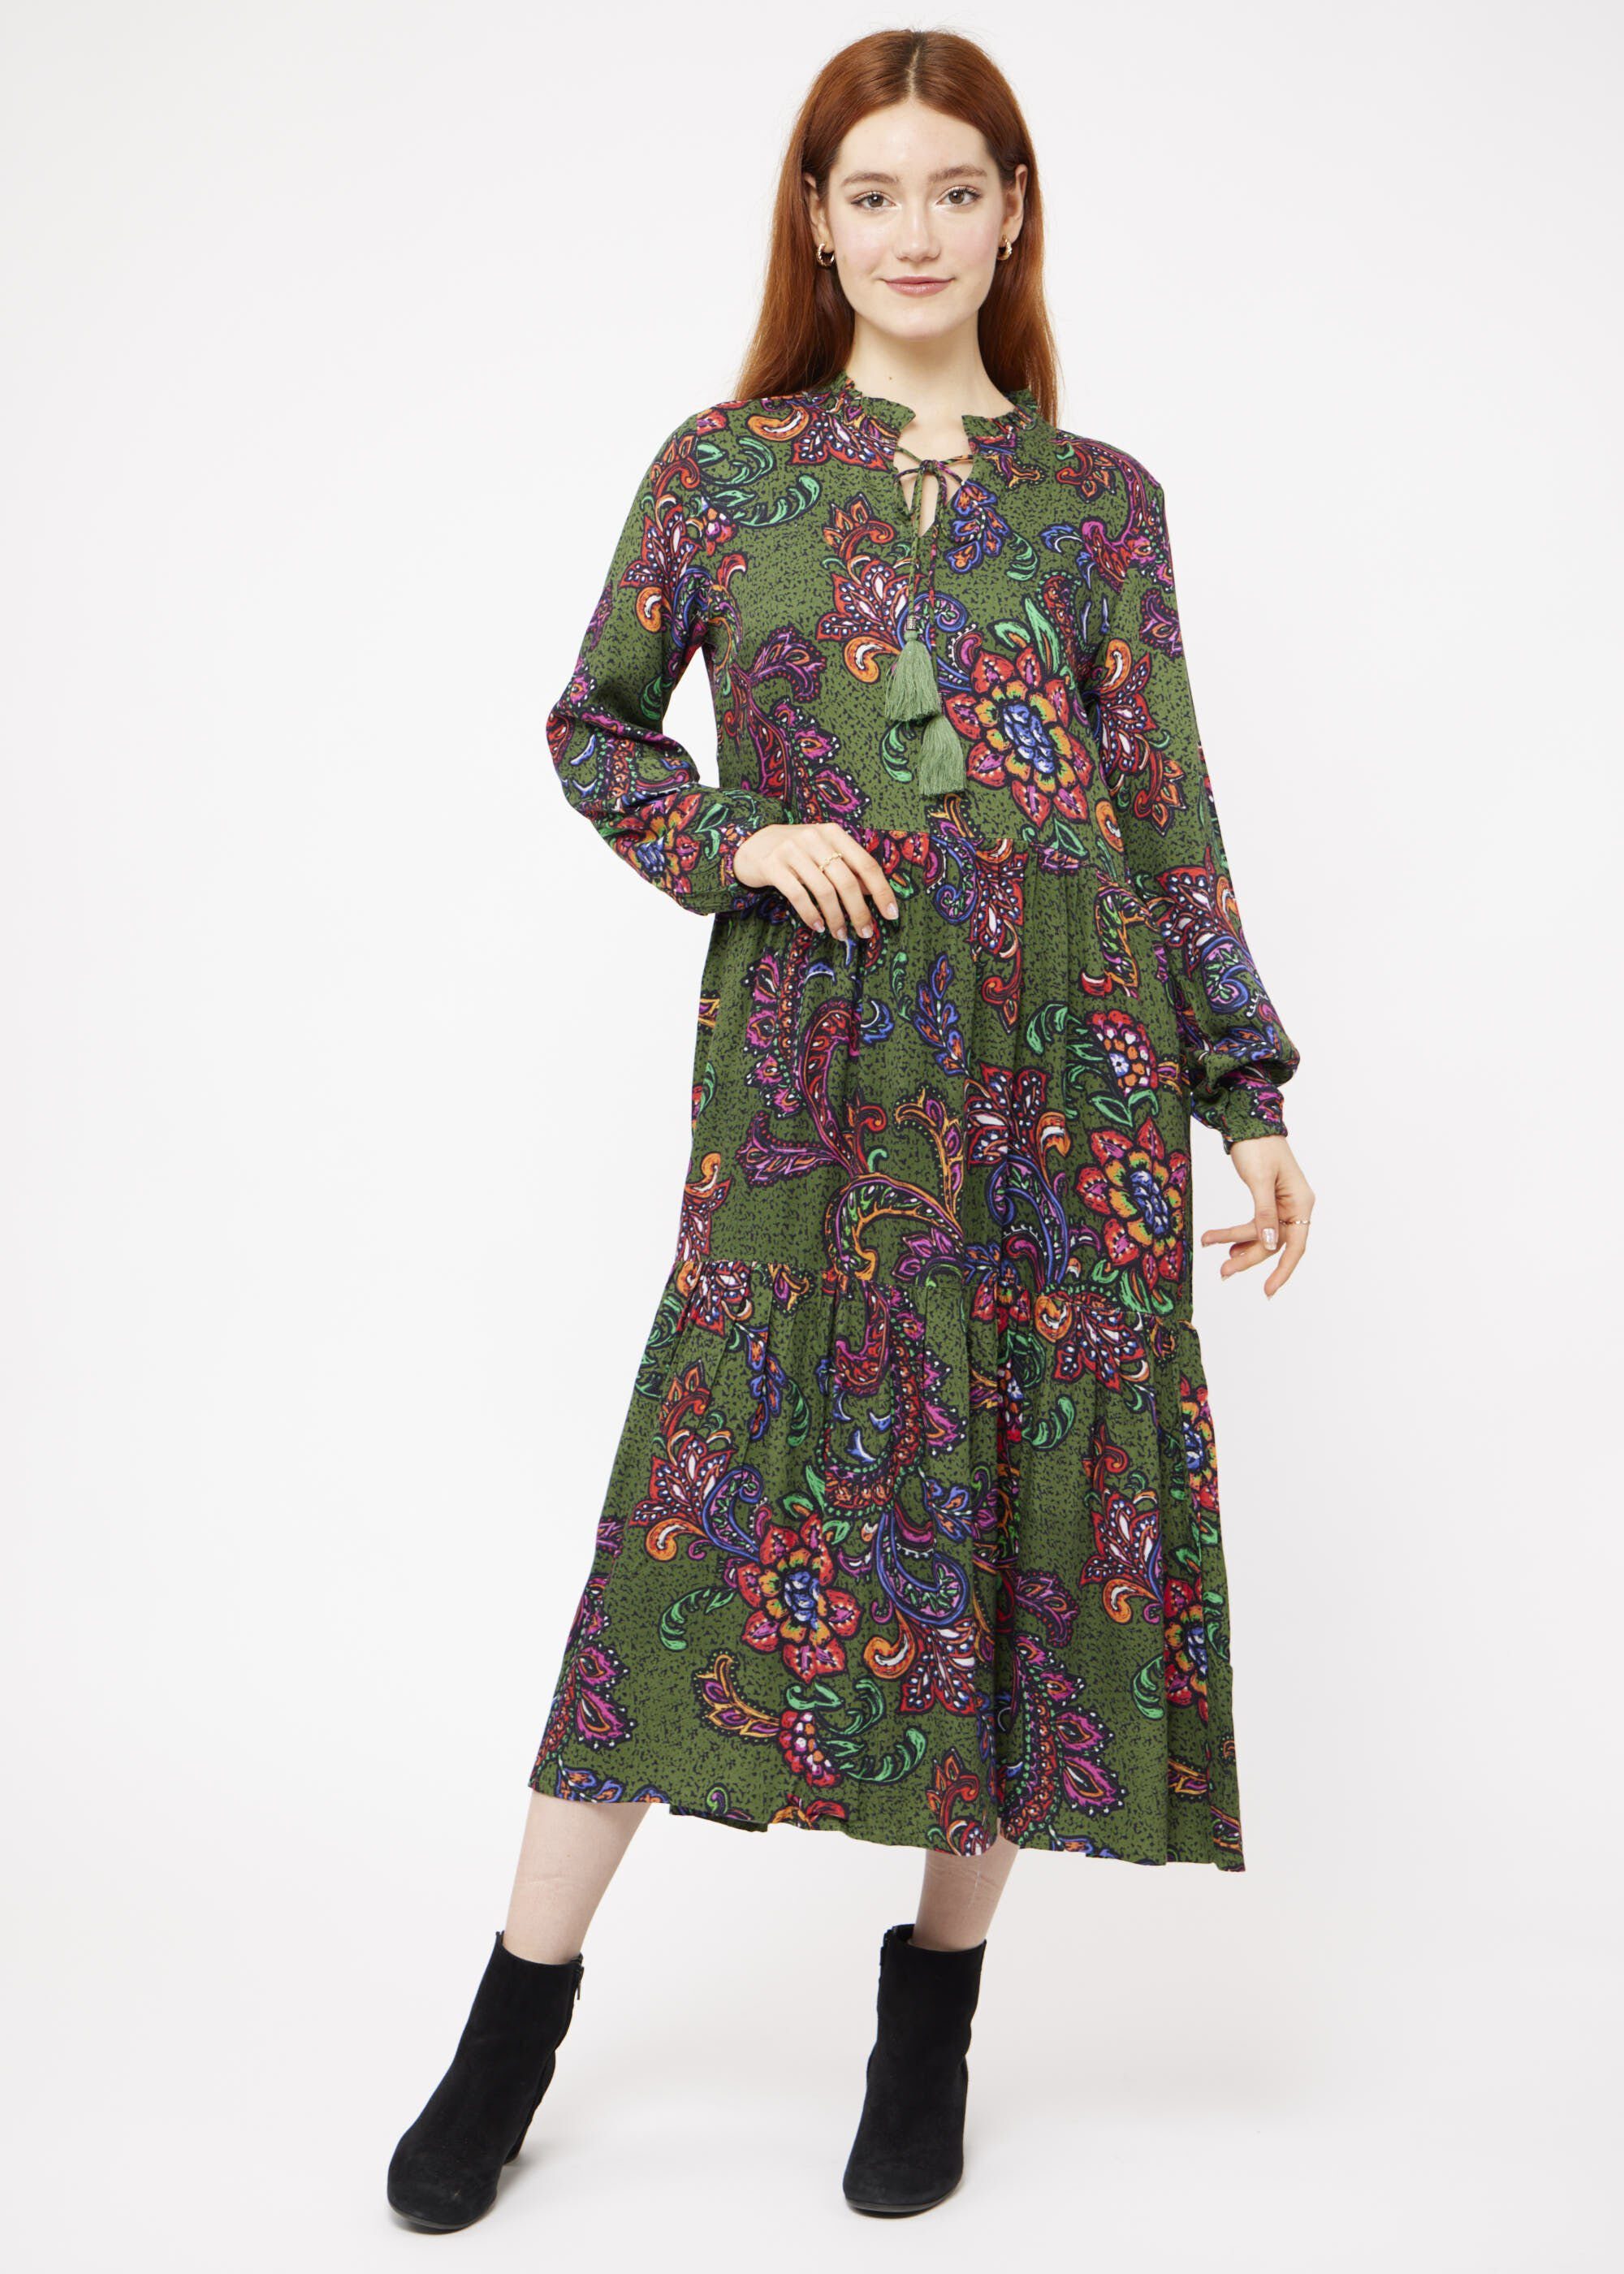 Blumendruck, Viskose Farbkontrastdruck Boho-Stil mit Blusenkleid VICCI Germany mit hübschem im aus Maxikleid